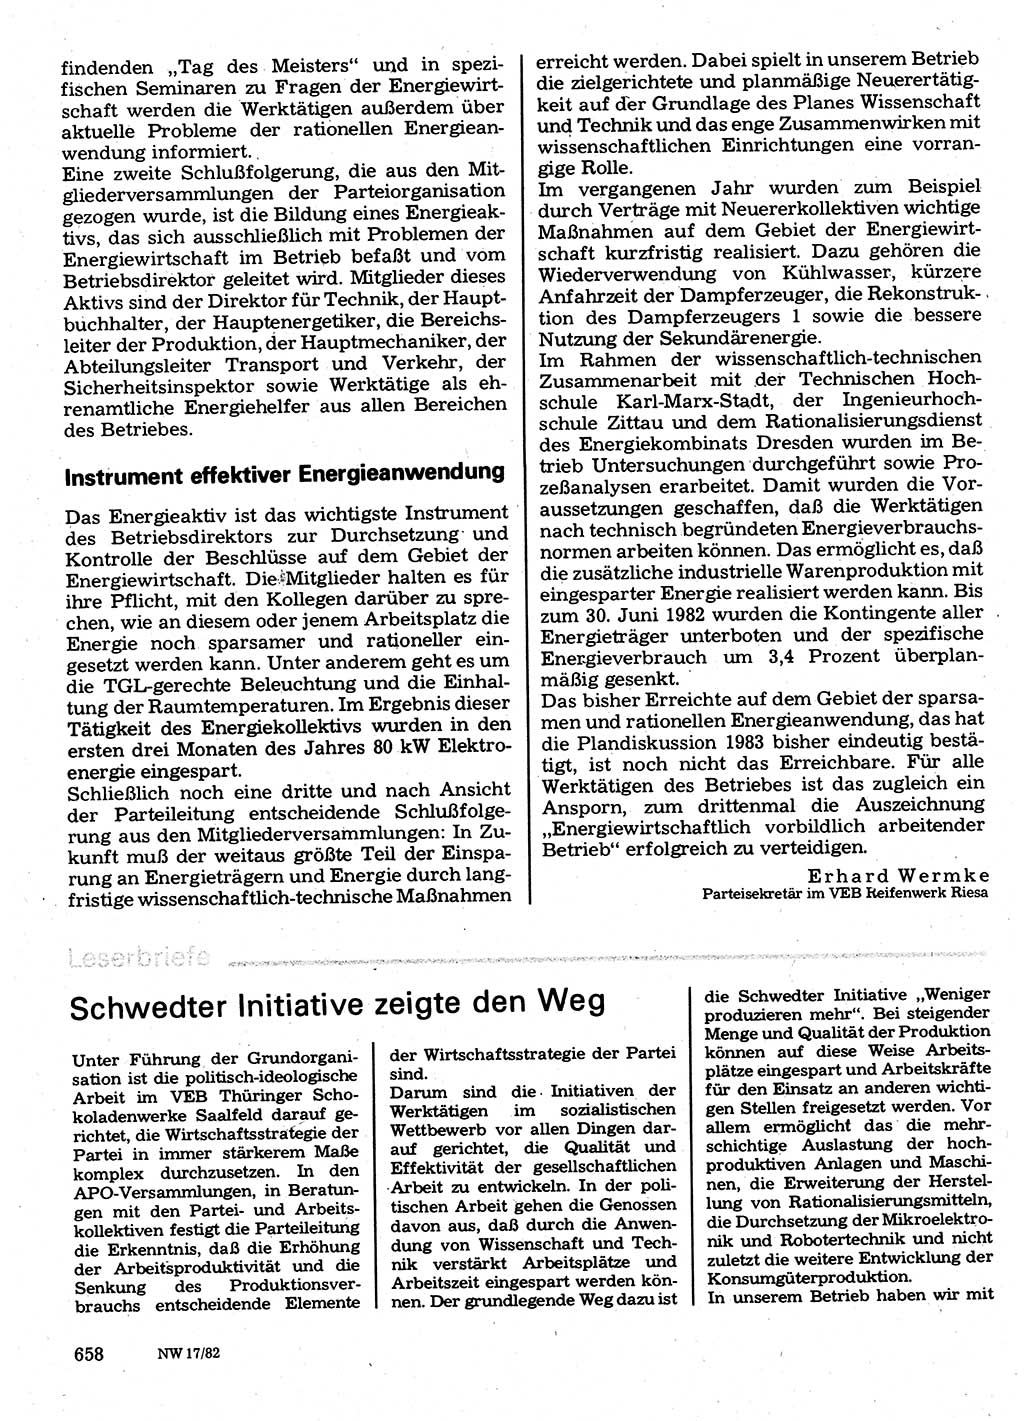 Neuer Weg (NW), Organ des Zentralkomitees (ZK) der SED (Sozialistische Einheitspartei Deutschlands) für Fragen des Parteilebens, 37. Jahrgang [Deutsche Demokratische Republik (DDR)] 1982, Seite 658 (NW ZK SED DDR 1982, S. 658)